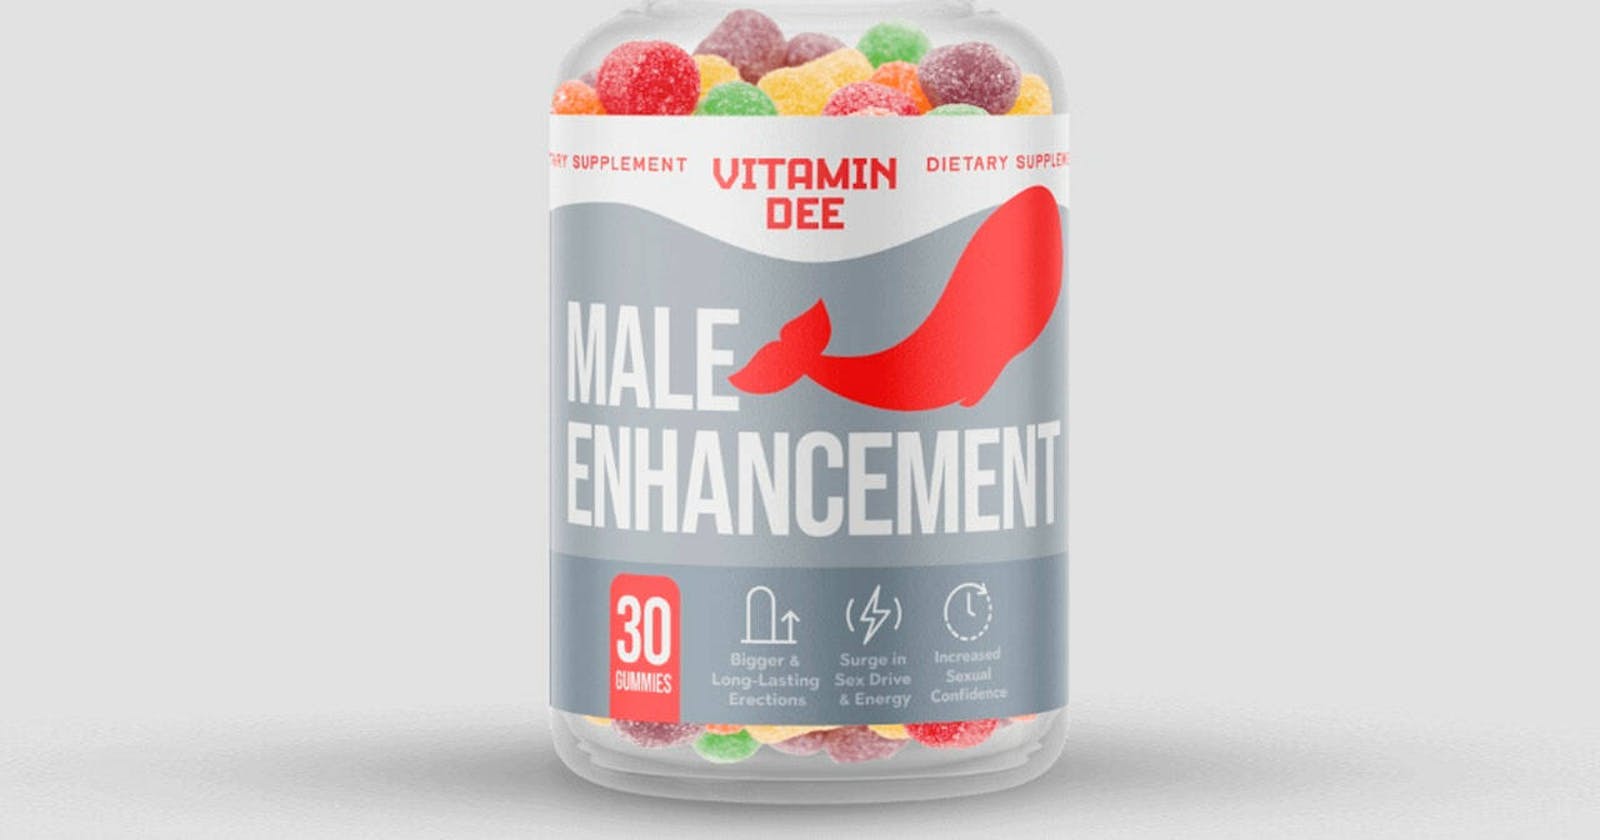 Vitamin D Male Enhancement Reviews SCAM or LEGIT? (AU)